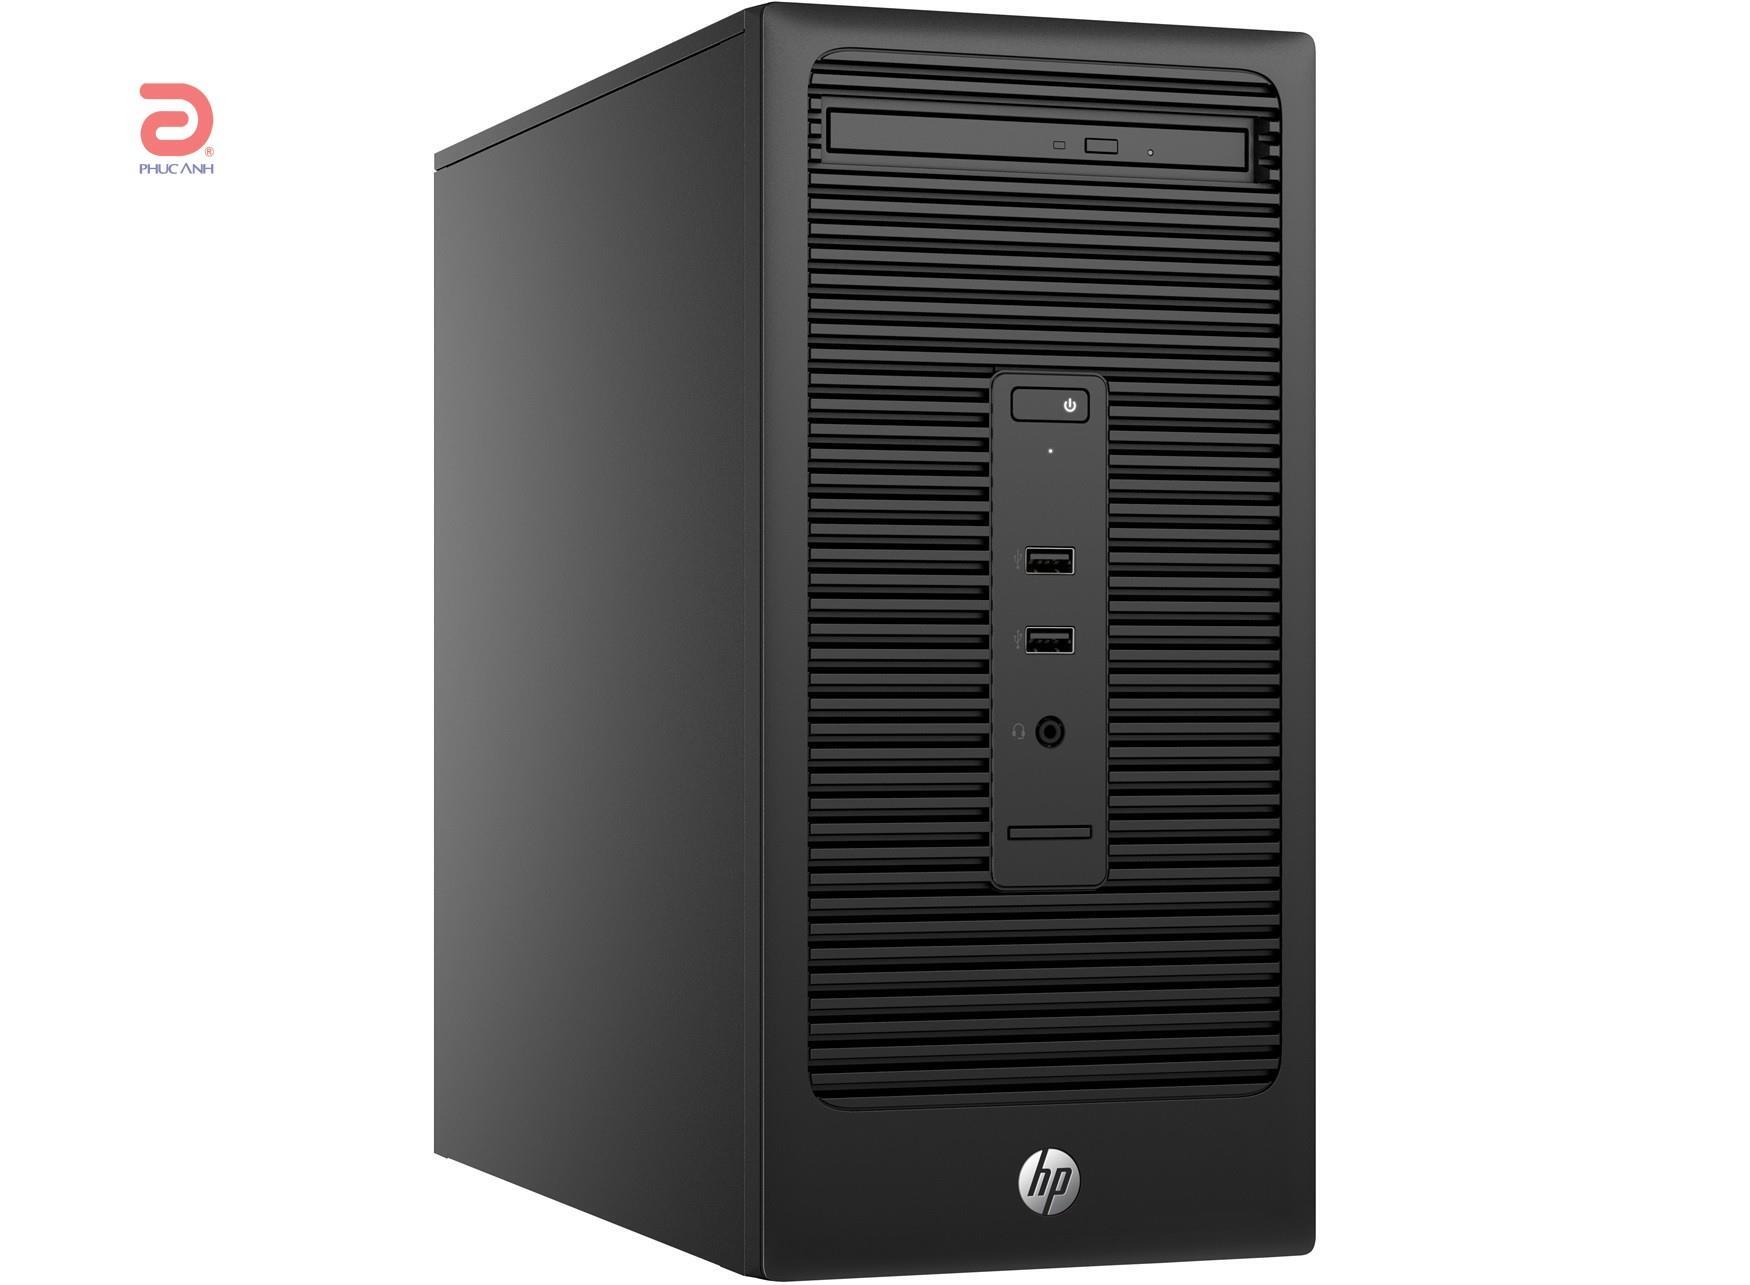 Máy tính để bàn HP 280 G2 1AM03PA - Intel Core i5 6500, RAM 4GB, HDD 1TB, Intel HD Graphics